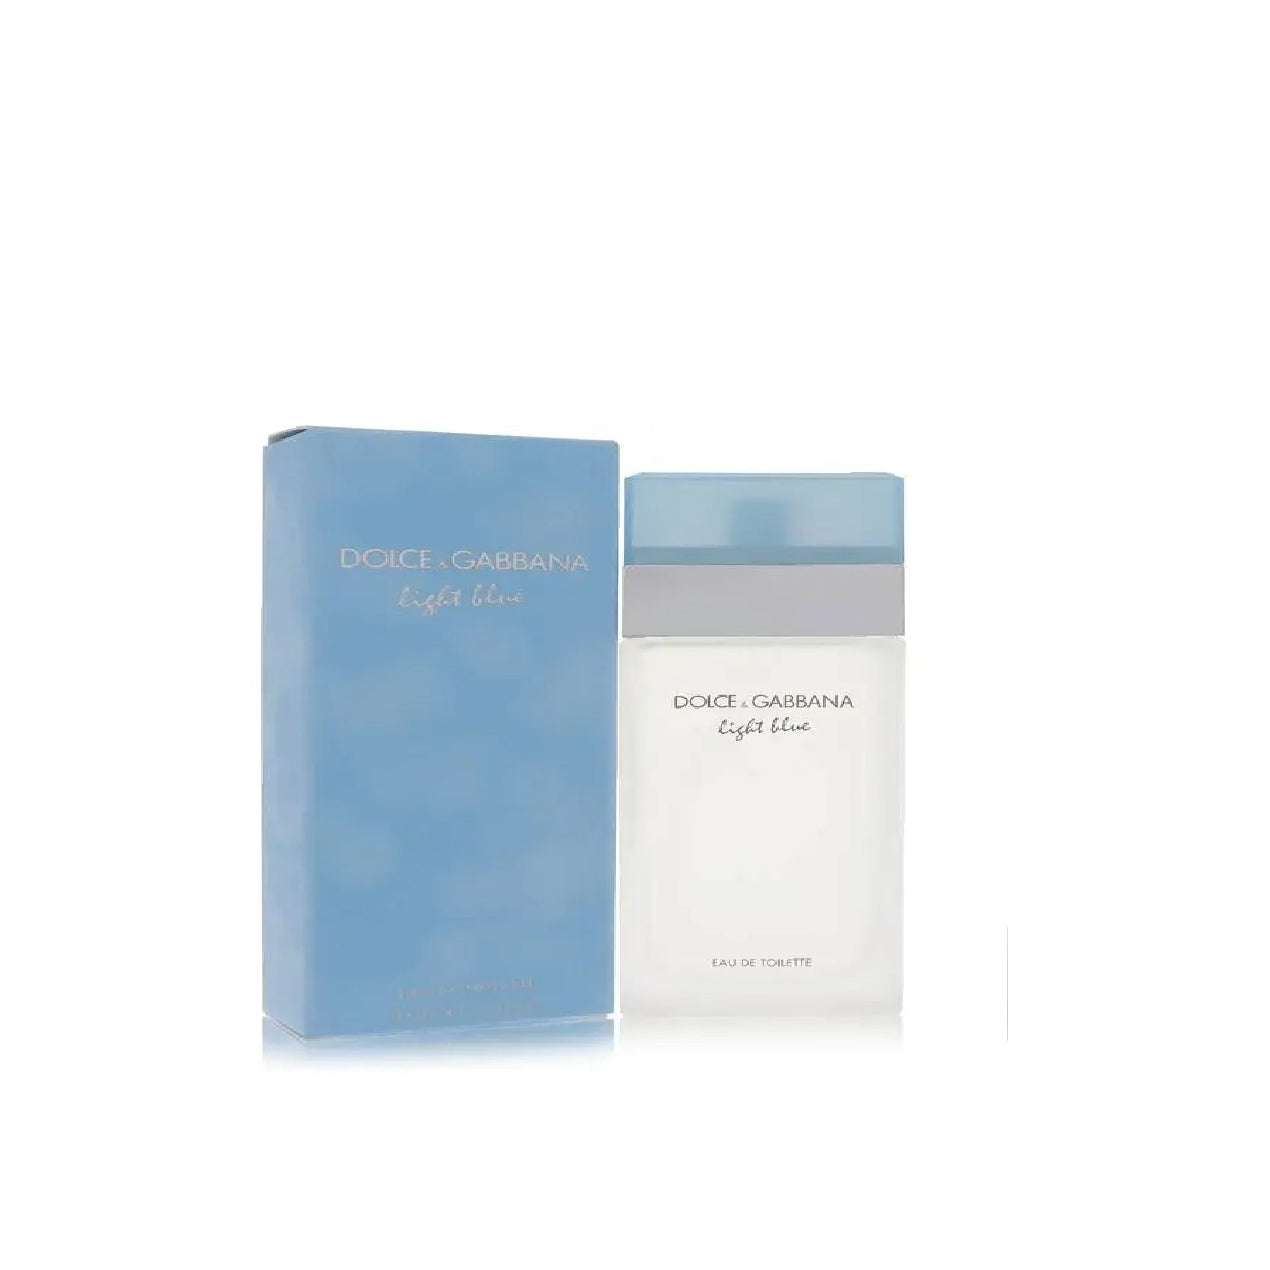 Dolce & Gabbana Light Blue Perfume for Women